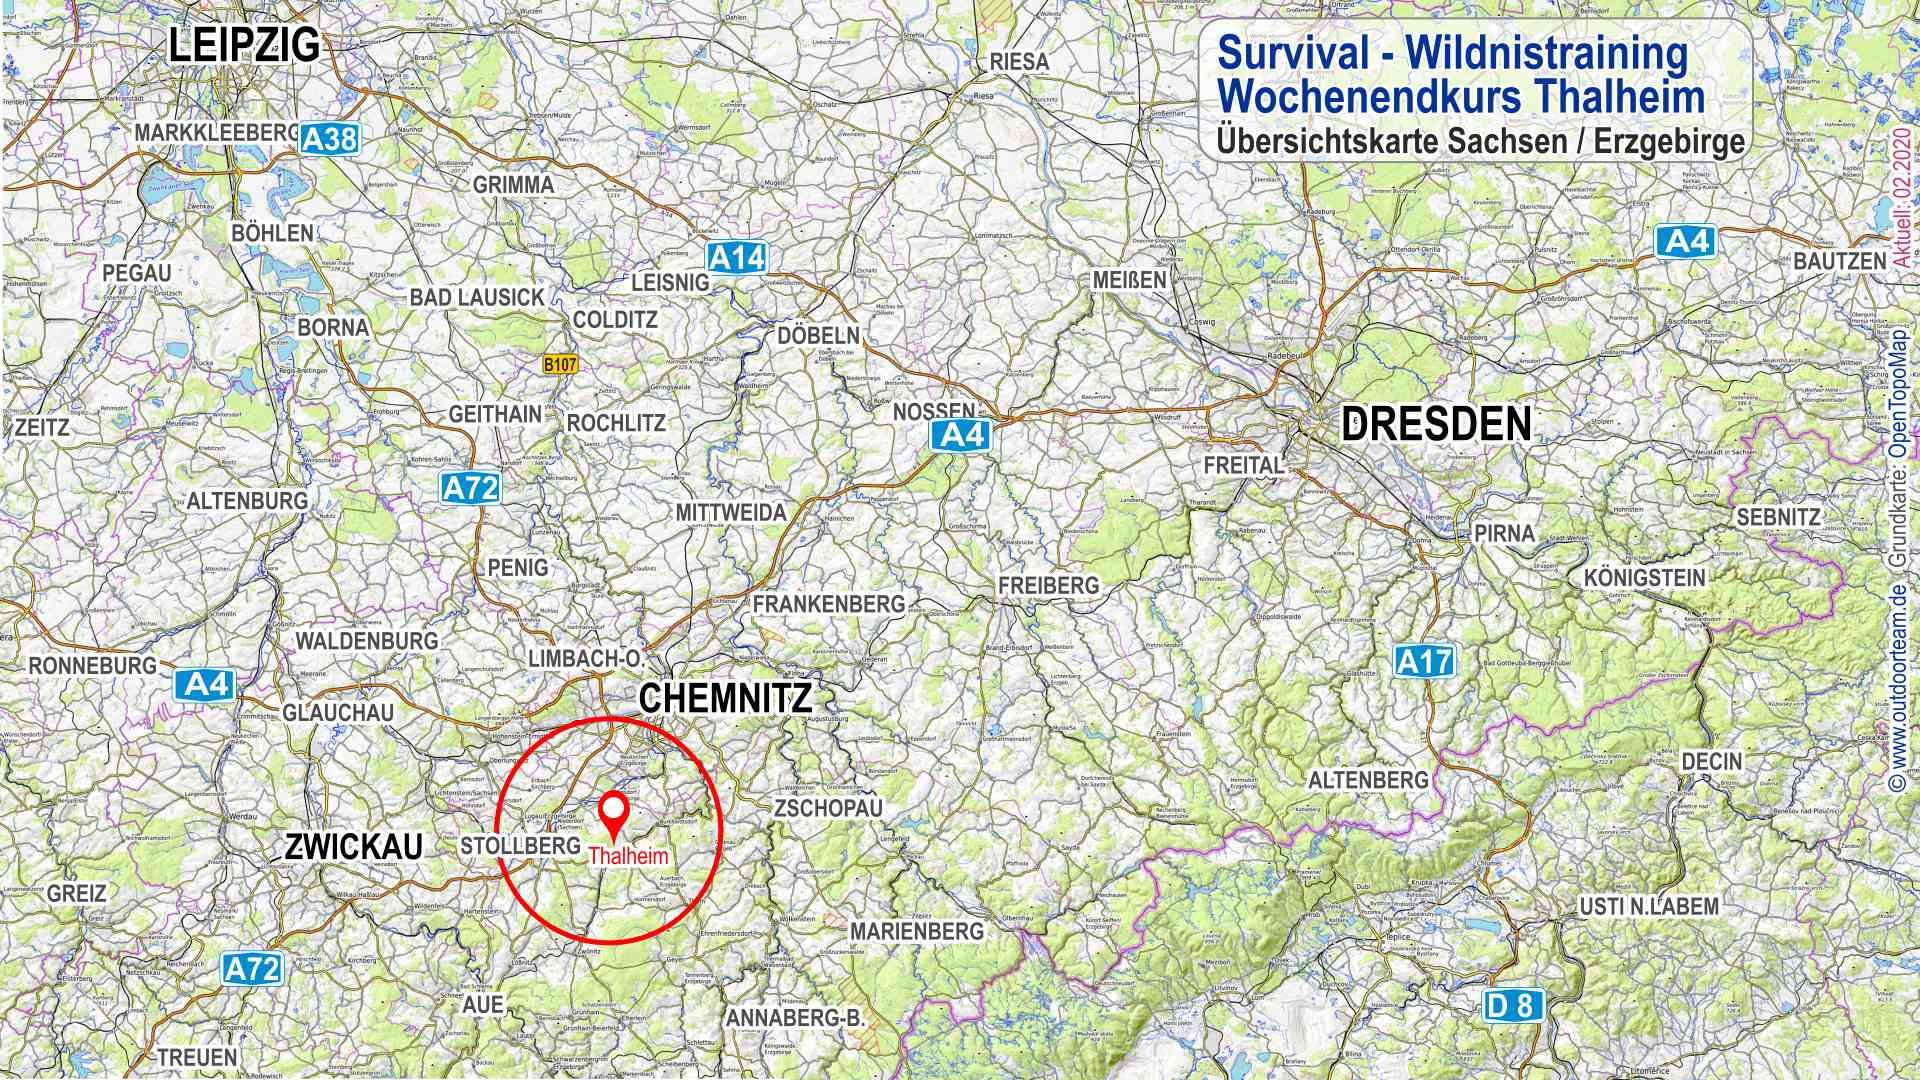 Übersichtskarte Sachsen / Erzgebirge mit markiertem Standort des Survivalkurs in Thalheim.